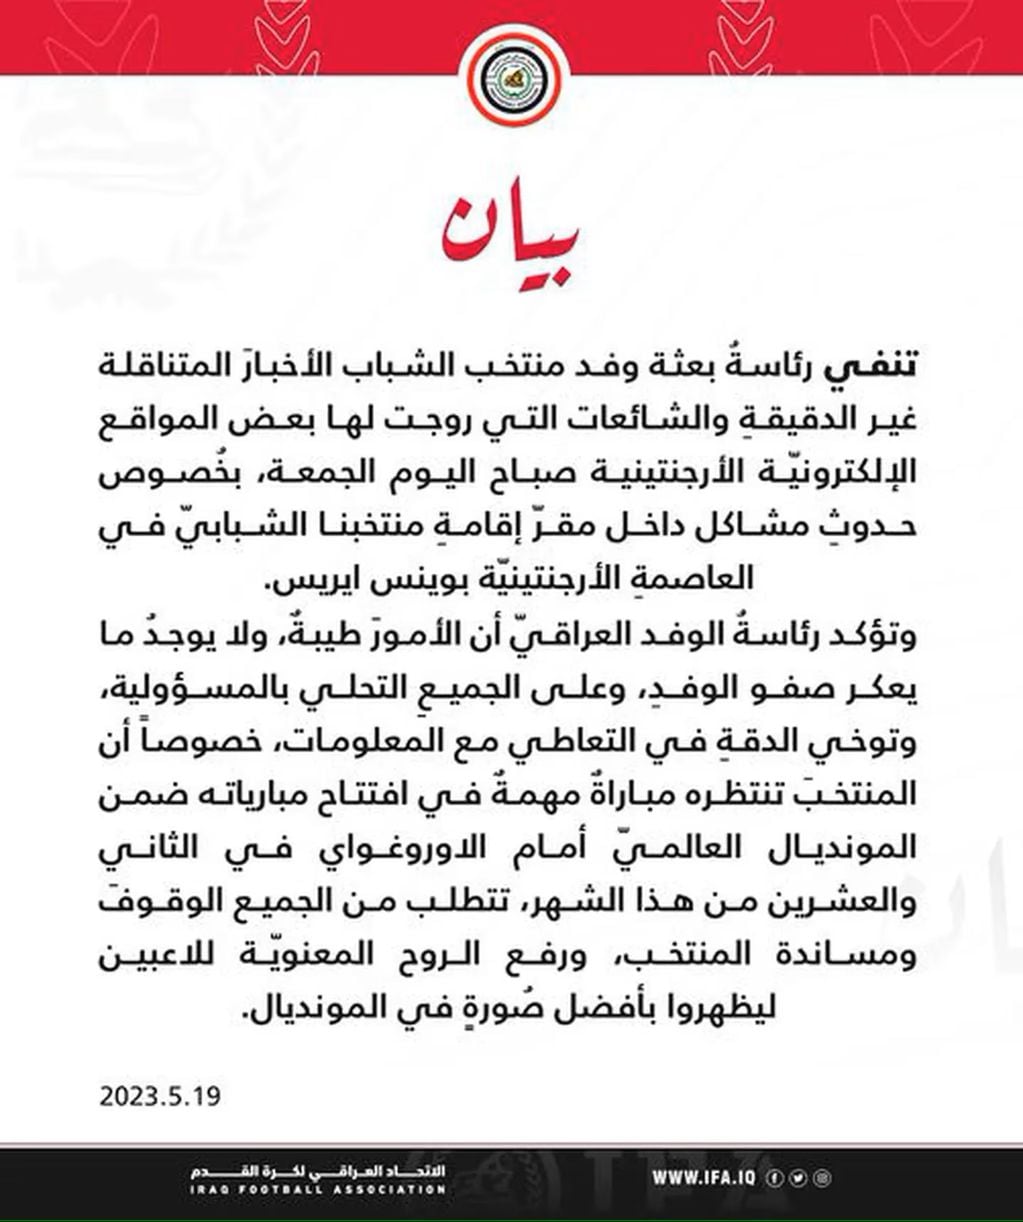 El comunicado de la federación iraquí. 